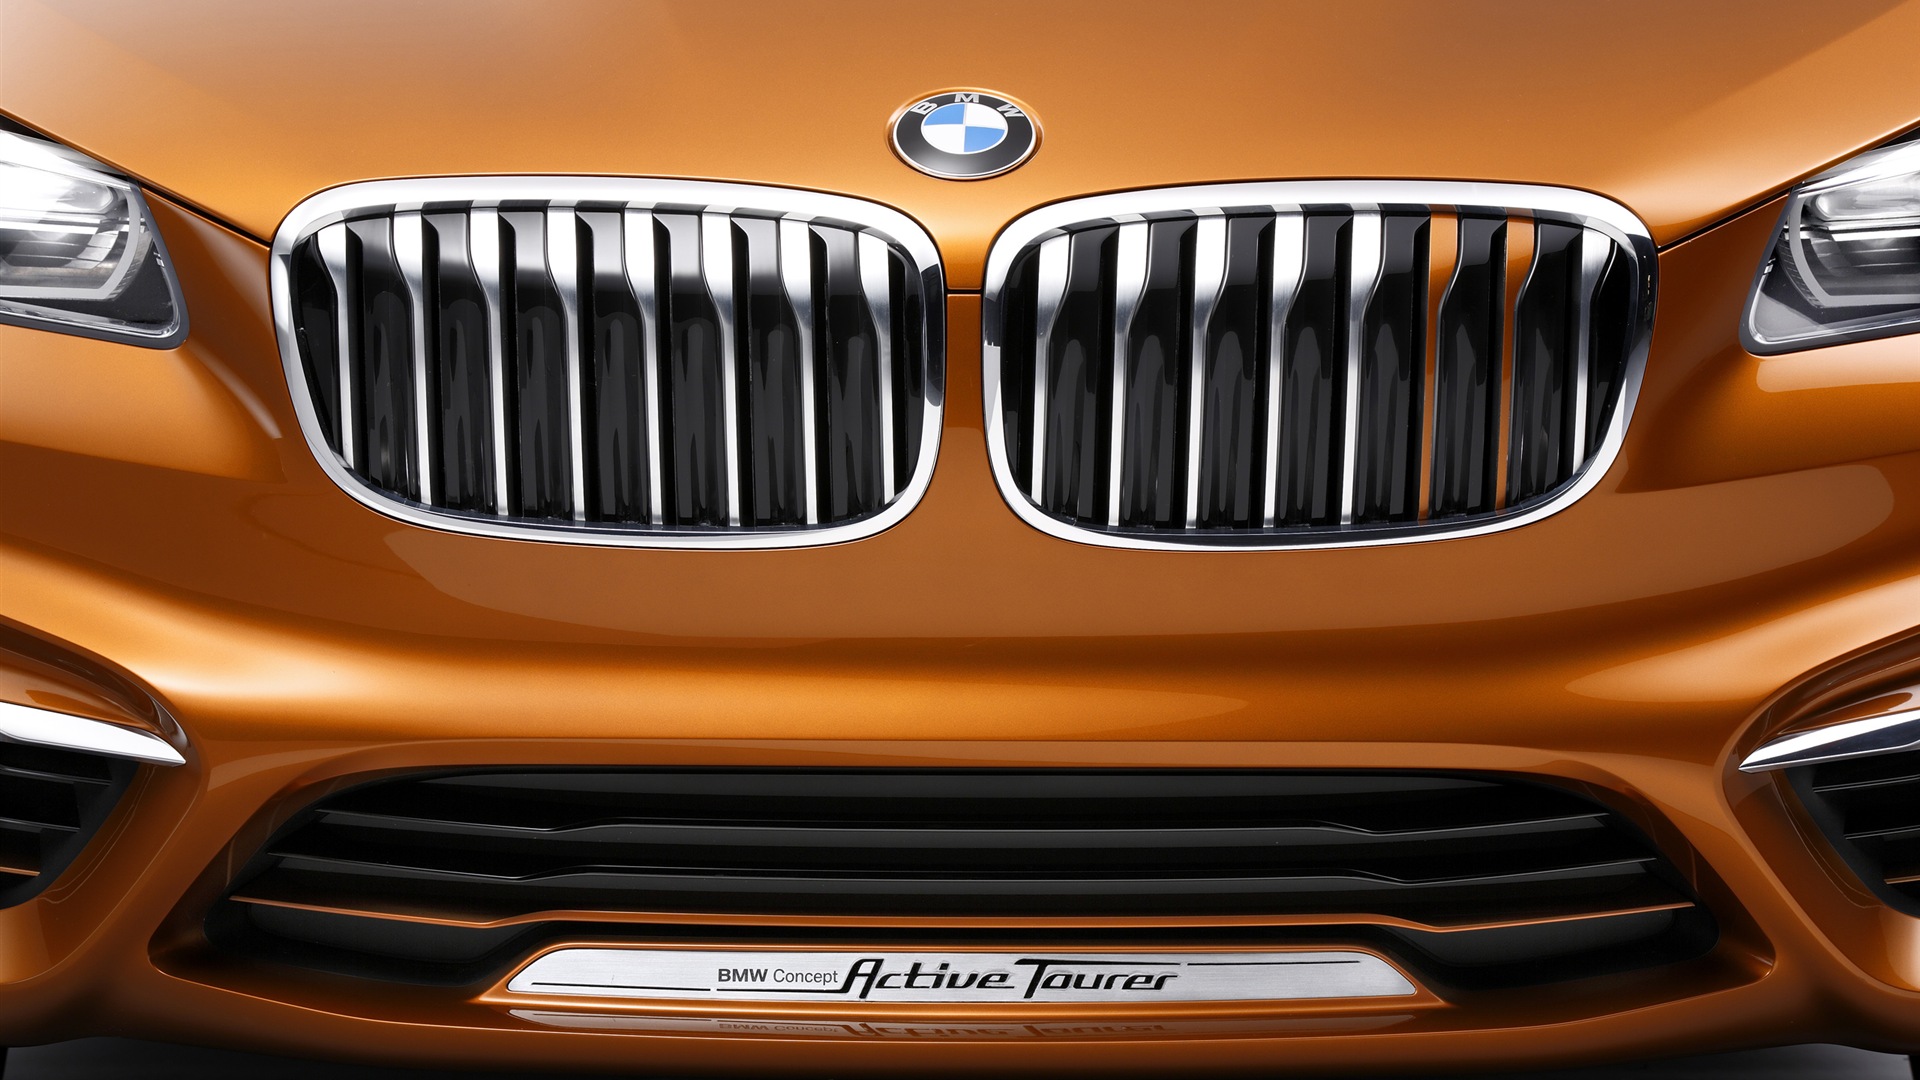 2013 BMW Concept Aktive Tourer HD Wallpaper #15 - 1920x1080